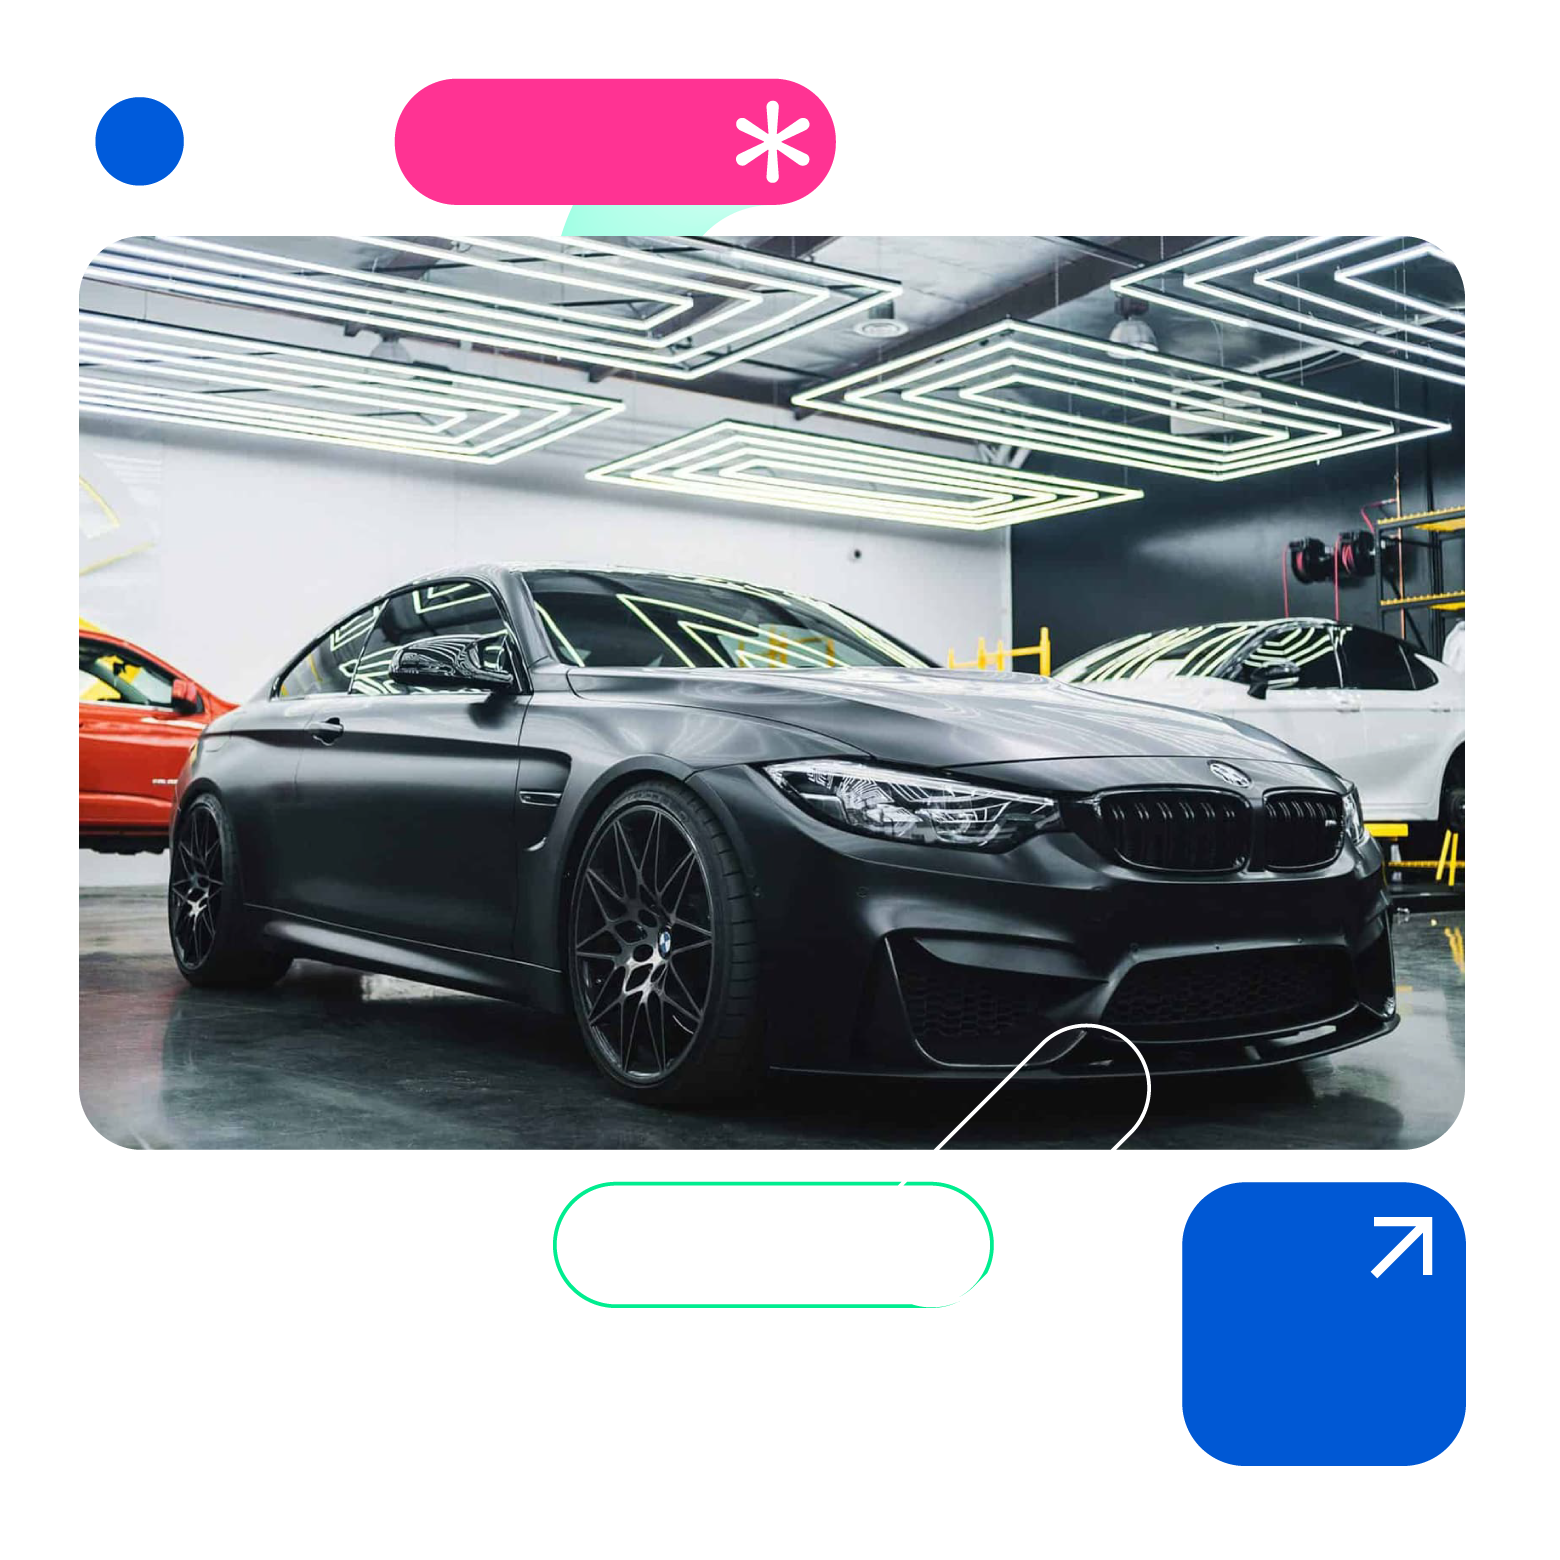 Fast Development at BMW